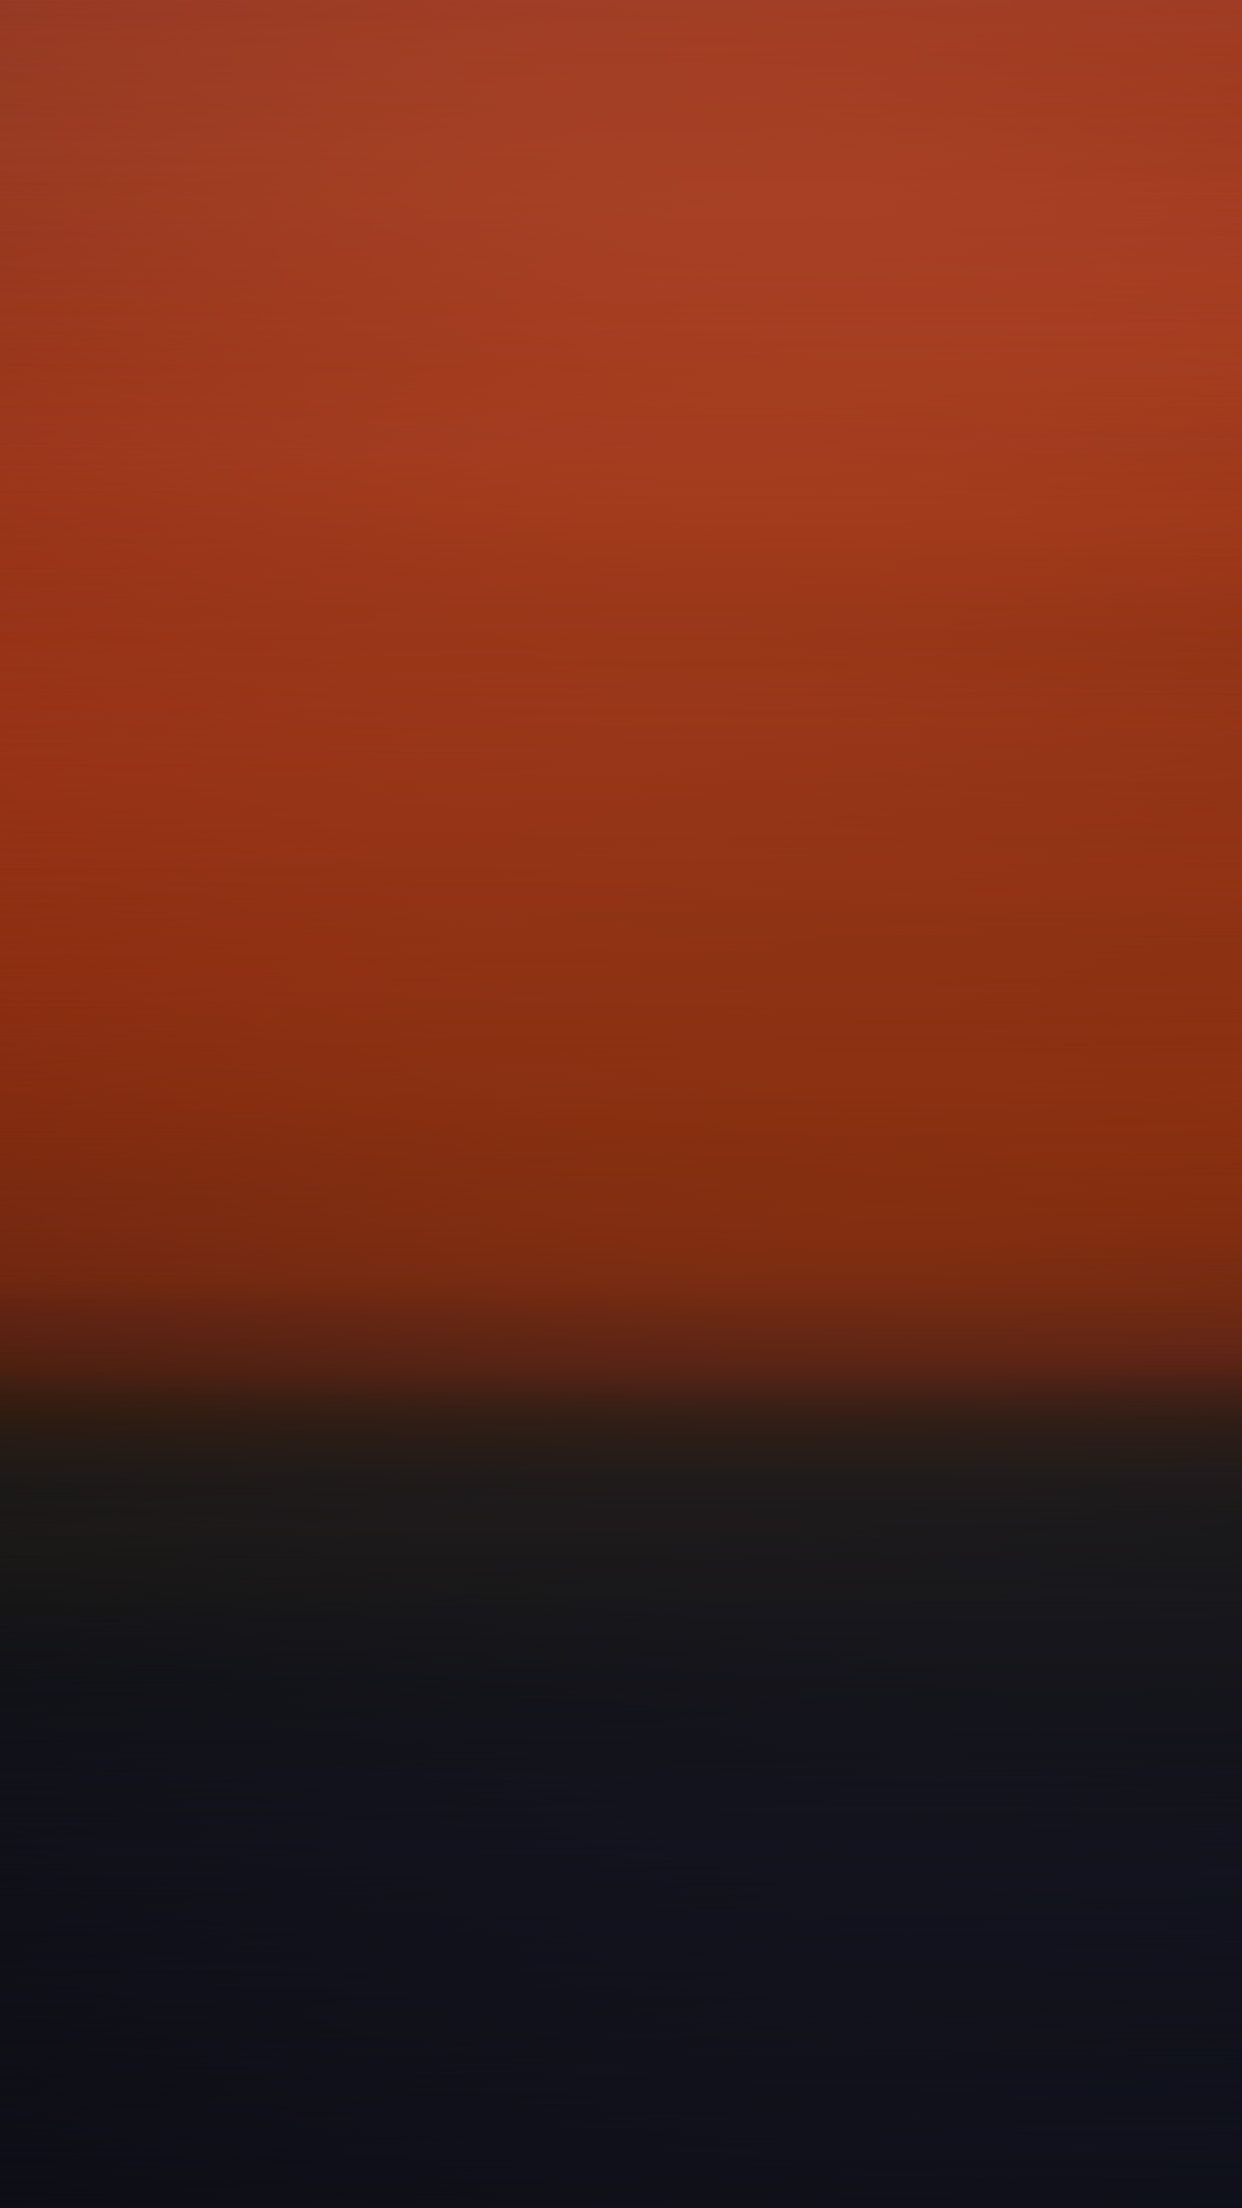 Motion Flat Orange Dark Gradation Blur